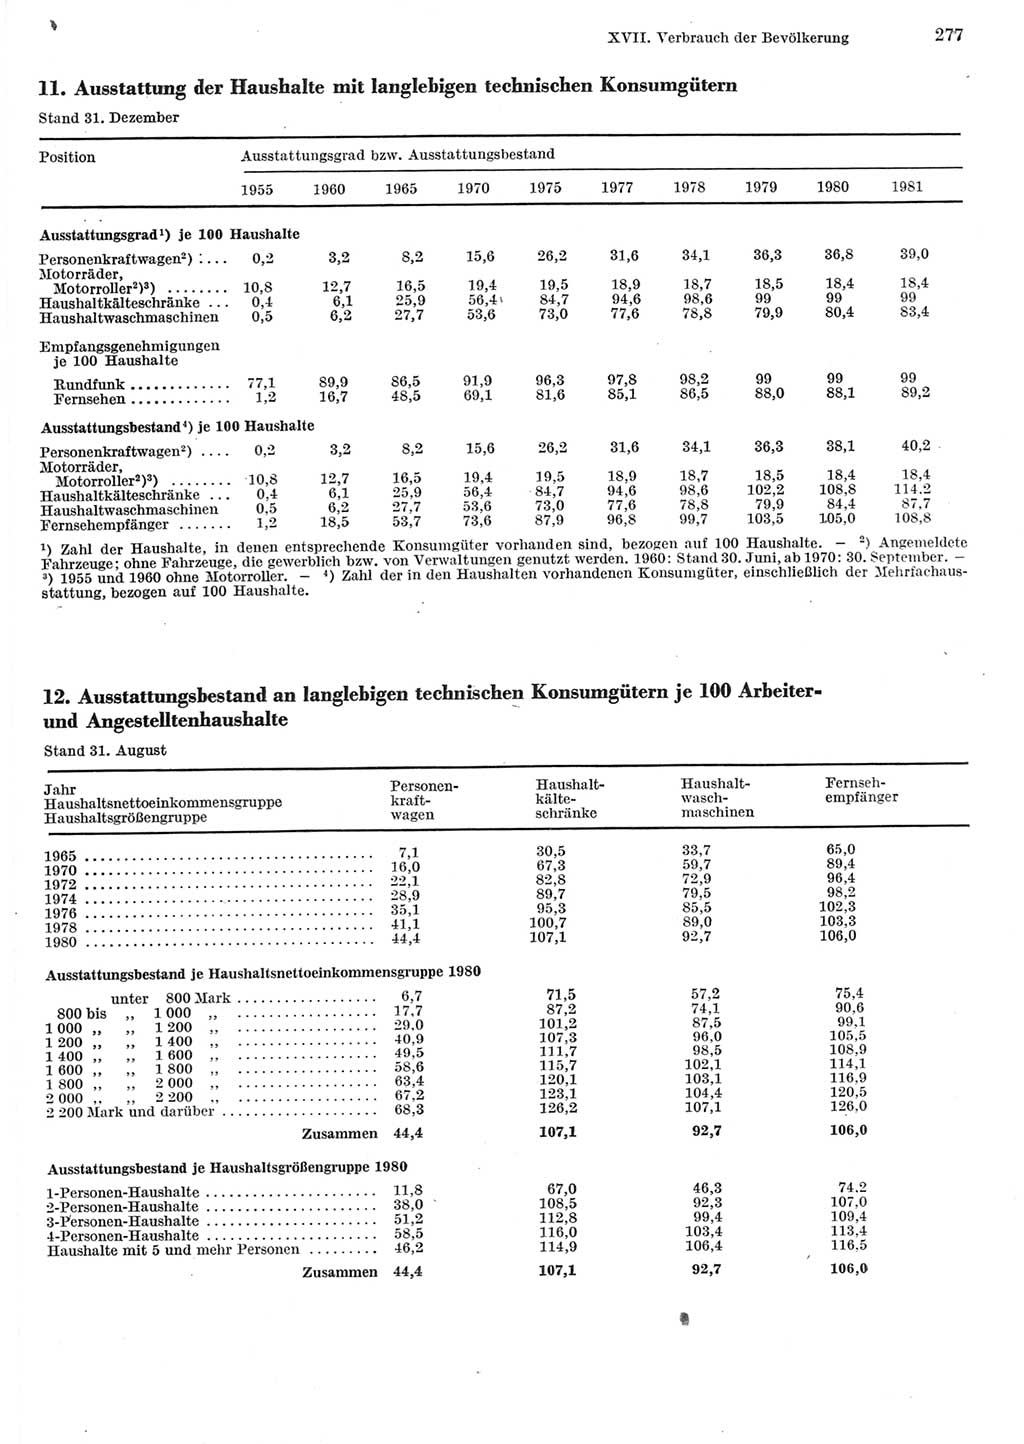 Statistisches Jahrbuch der Deutschen Demokratischen Republik (DDR) 1982, Seite 277 (Stat. Jb. DDR 1982, S. 277)